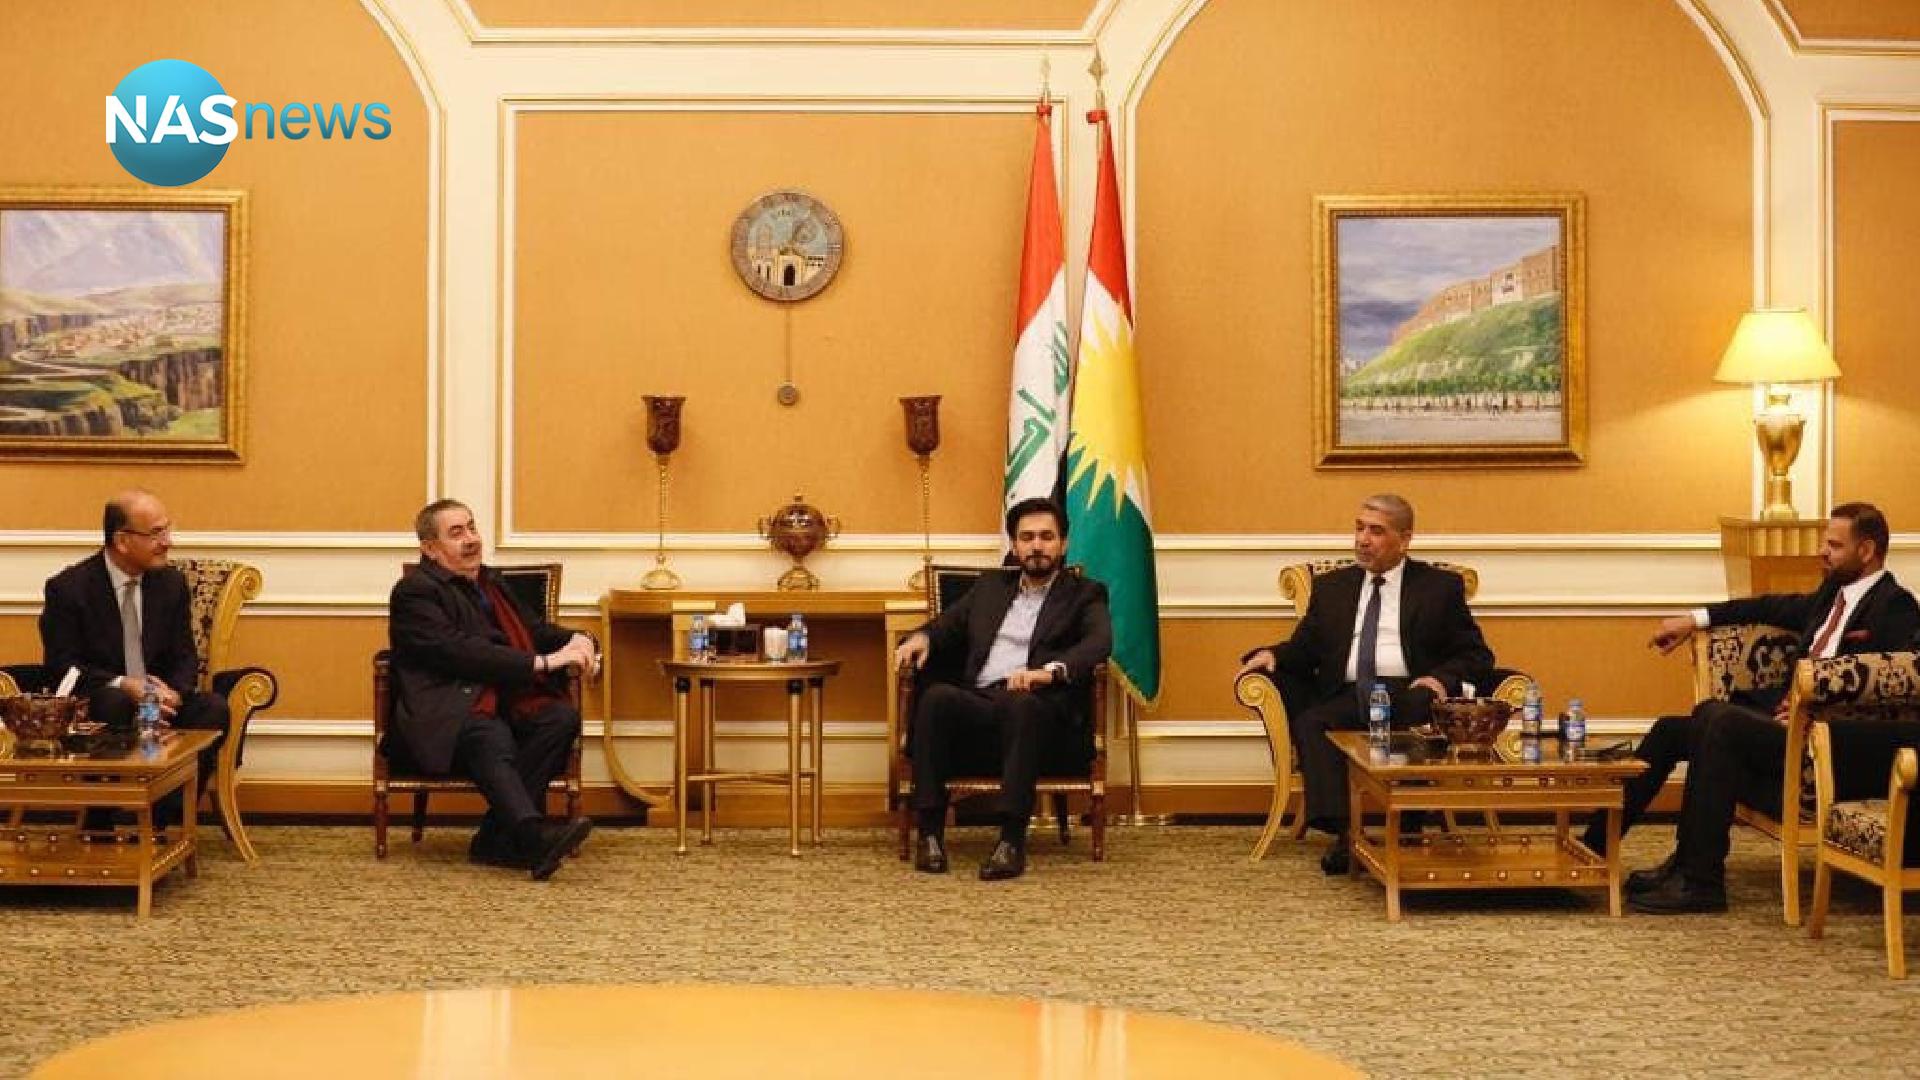 یک منبع کرد: نمایندگان جریان صدر به ریاست جمهوری زیباری رأی خواهند داد